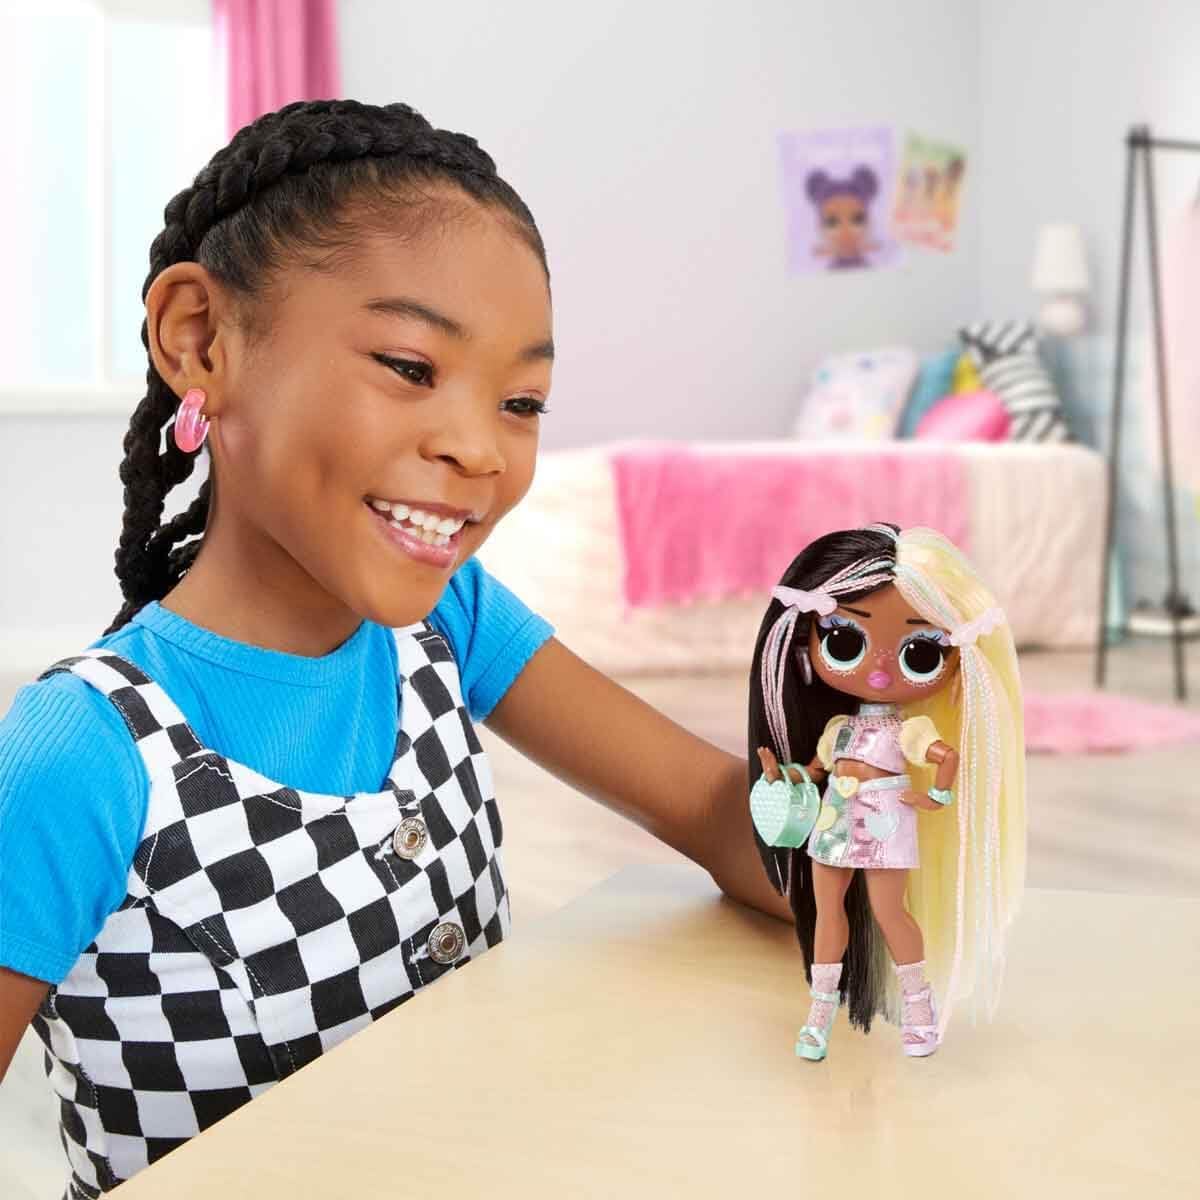 LOL Surprise Tweens - Fashion Doll Hana Groove - com mais de 10 surpresas e acessórios fabulosos - ótimo para crianças a partir de 4 anos